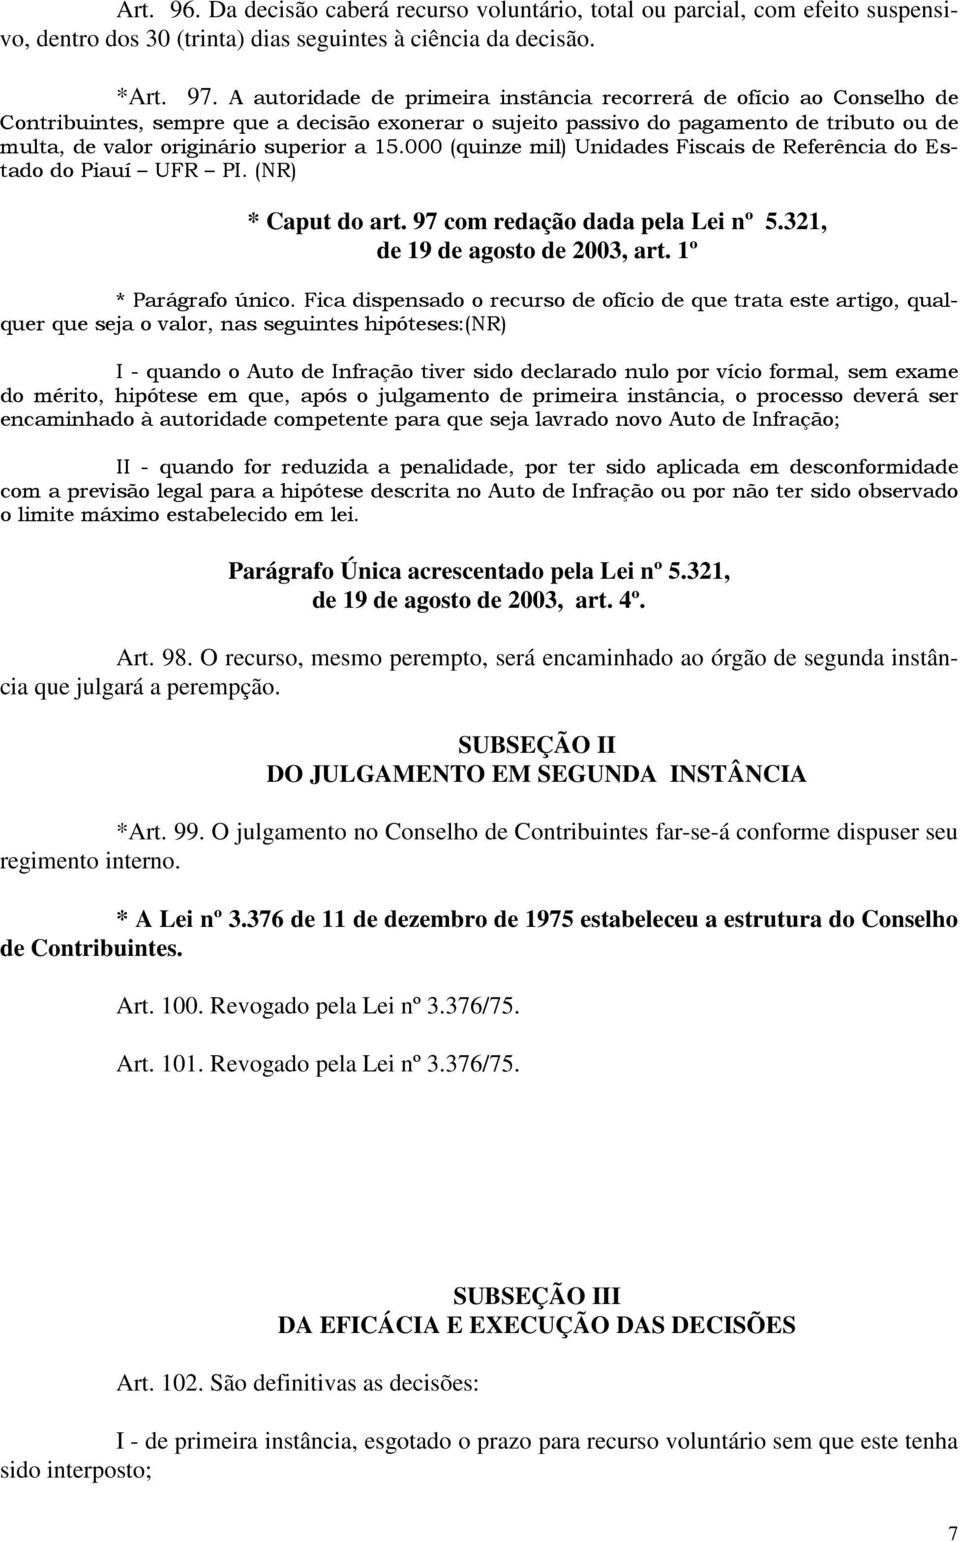 a 15.000 (quinze mil) Unidades Fiscais de Referência do Estado do Piauí UFR PI. (NR) * Caput do art. 97 com redação dada pela Lei nº 5.321, de 19 de agosto de 2003, art. 1º * Parágrafo único.